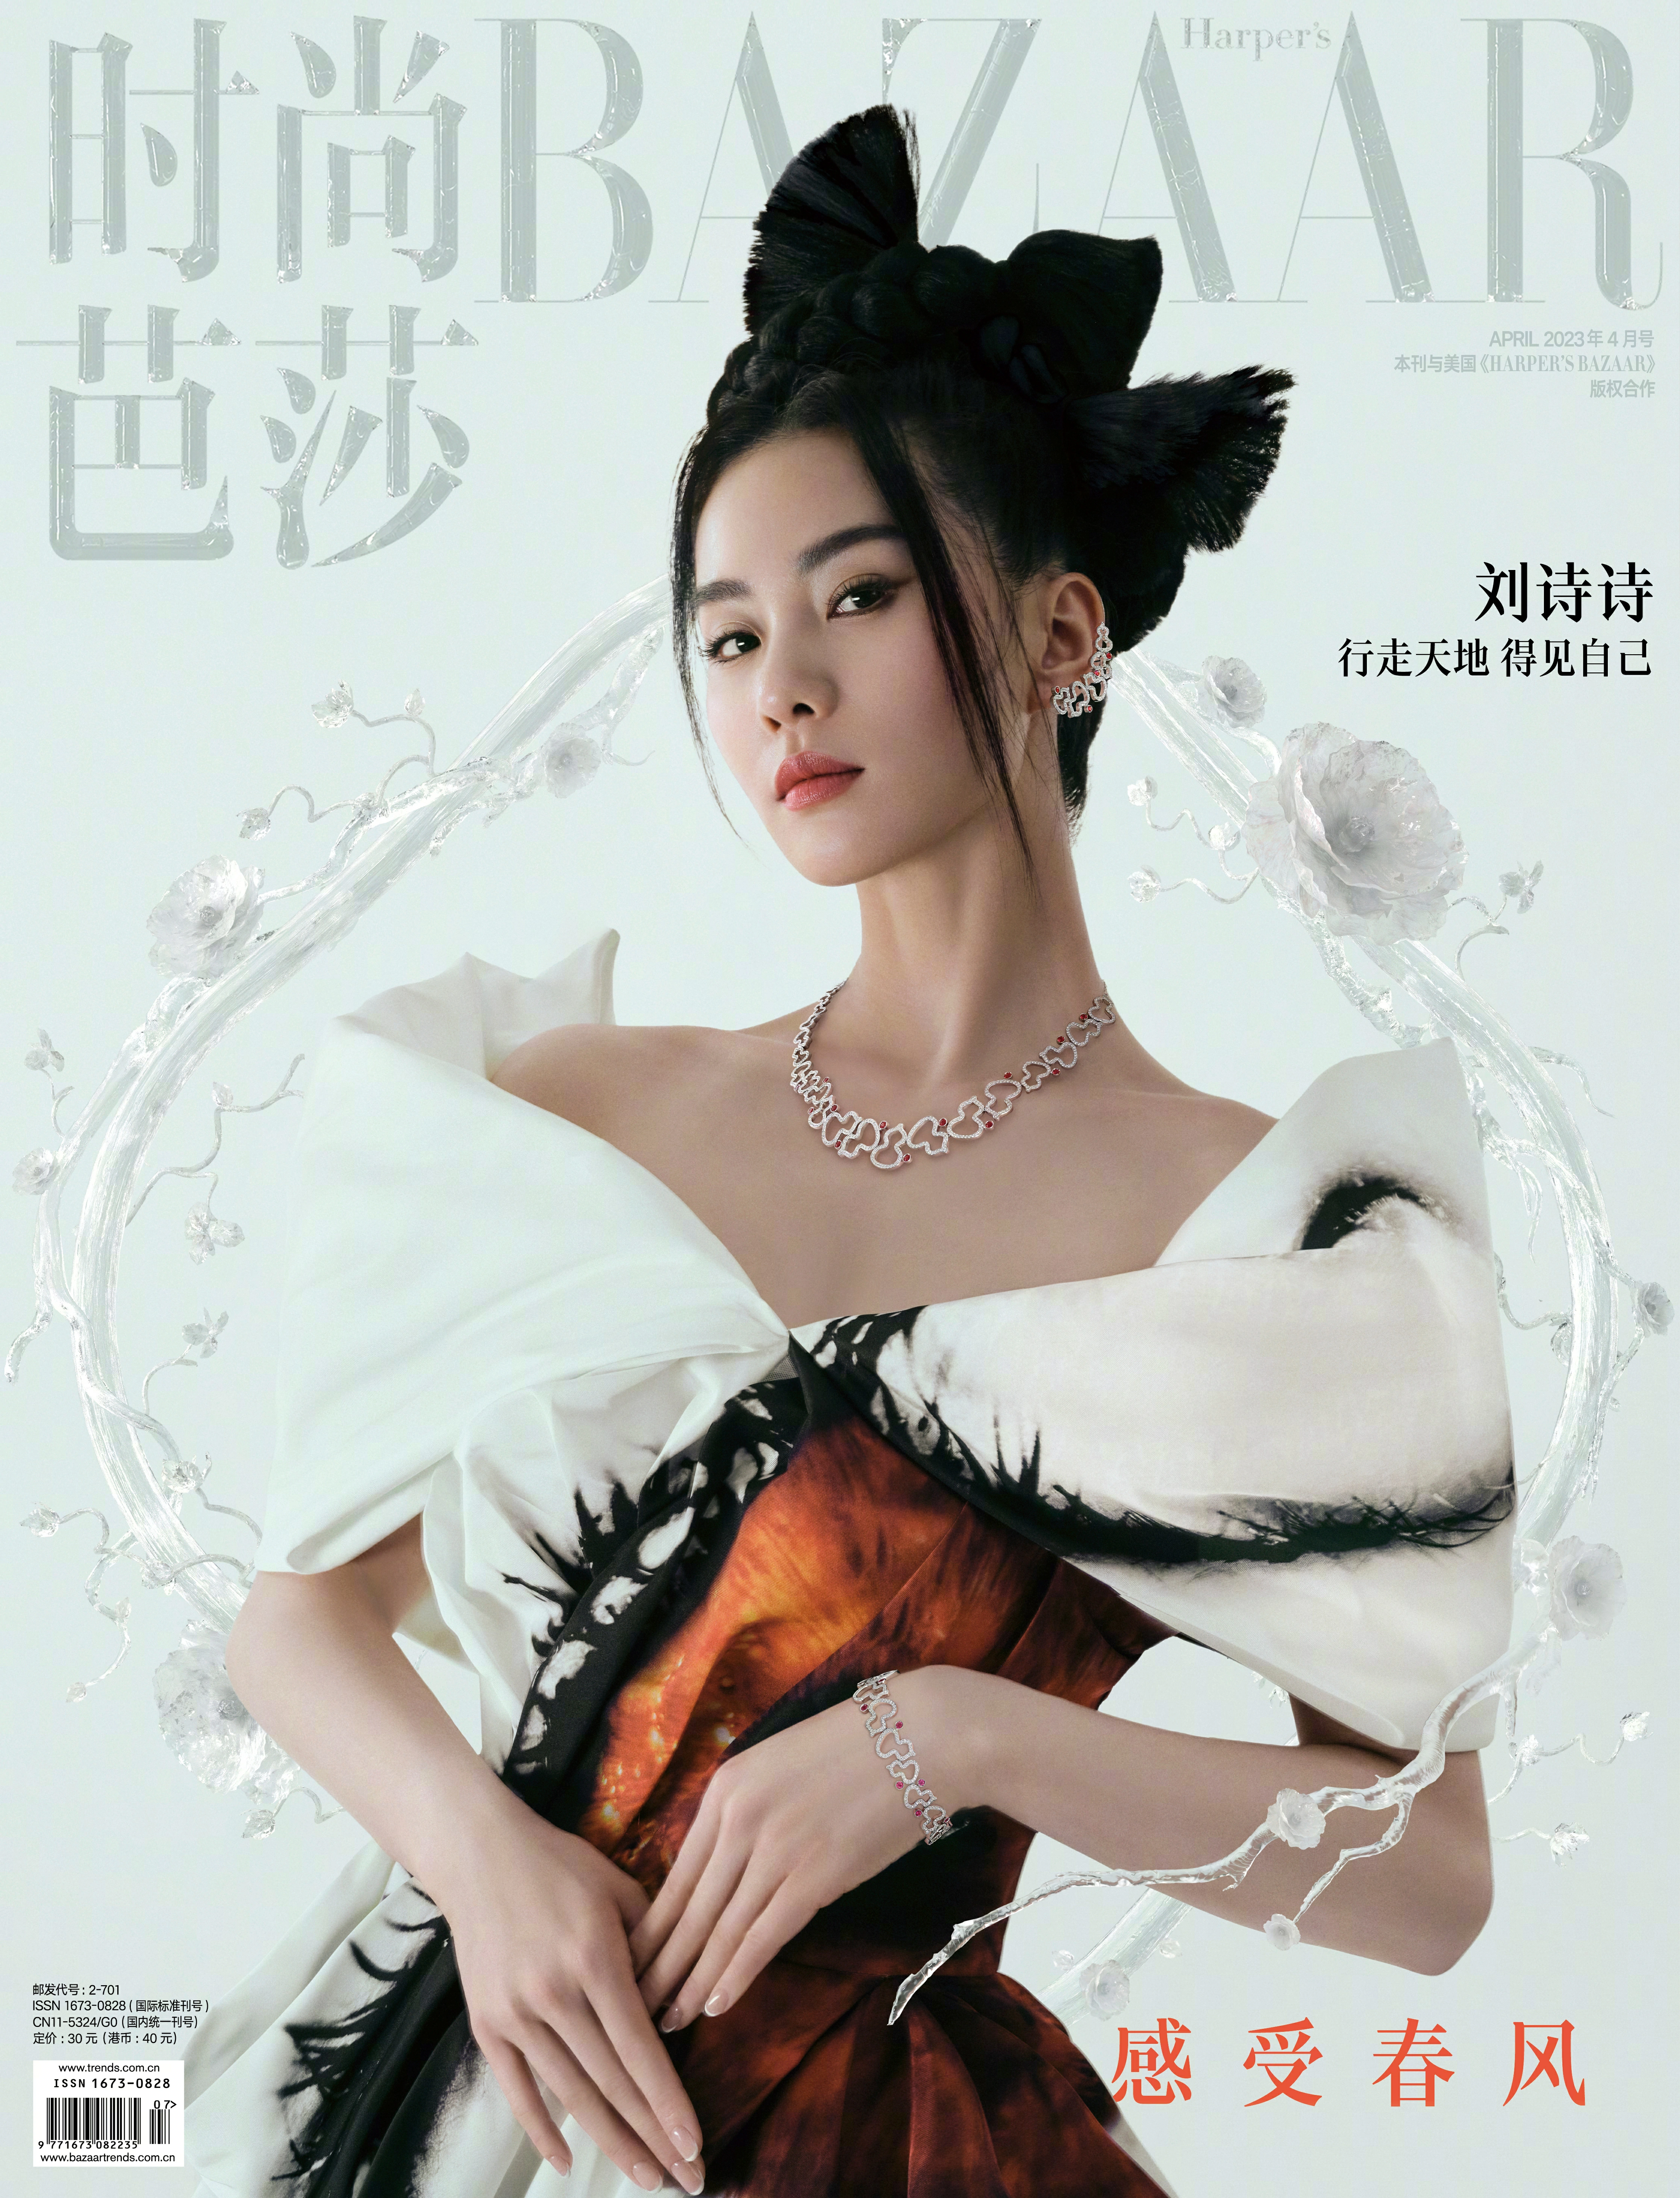 刘诗诗登上《时尚芭莎》四月刊封面 春意盎然的美诗…,1 (2)